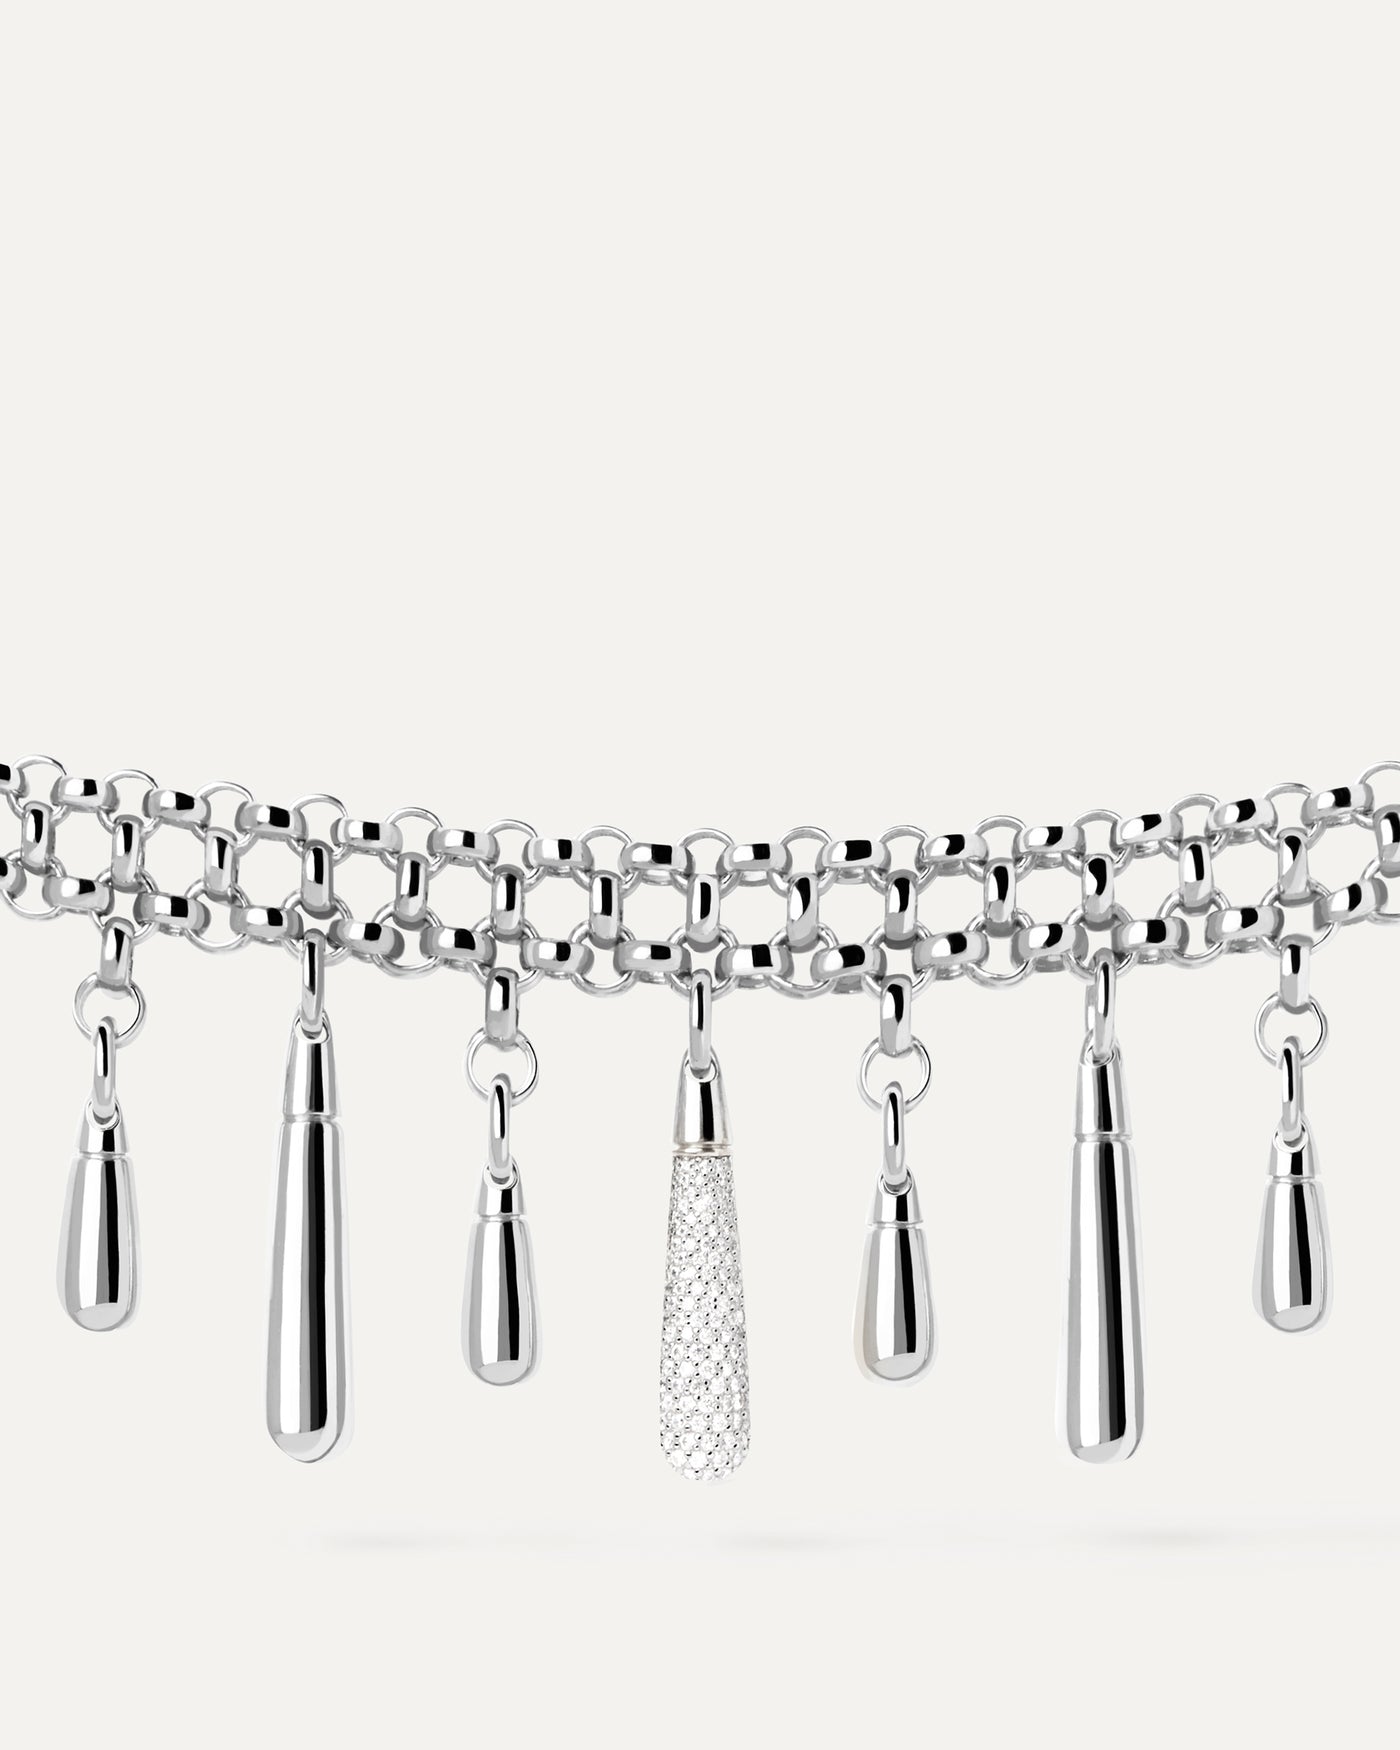 Jelly Ketten Silberhalskette. Silberne Doppelkette Choker-Halskette mit Gold- und Pavé-Tropfenanhängern. Erhalten Sie die neuesten Produkte von PDPAOLA. Geben Sie Ihre Bestellung sicher auf und erhalten Sie diesen Bestseller.